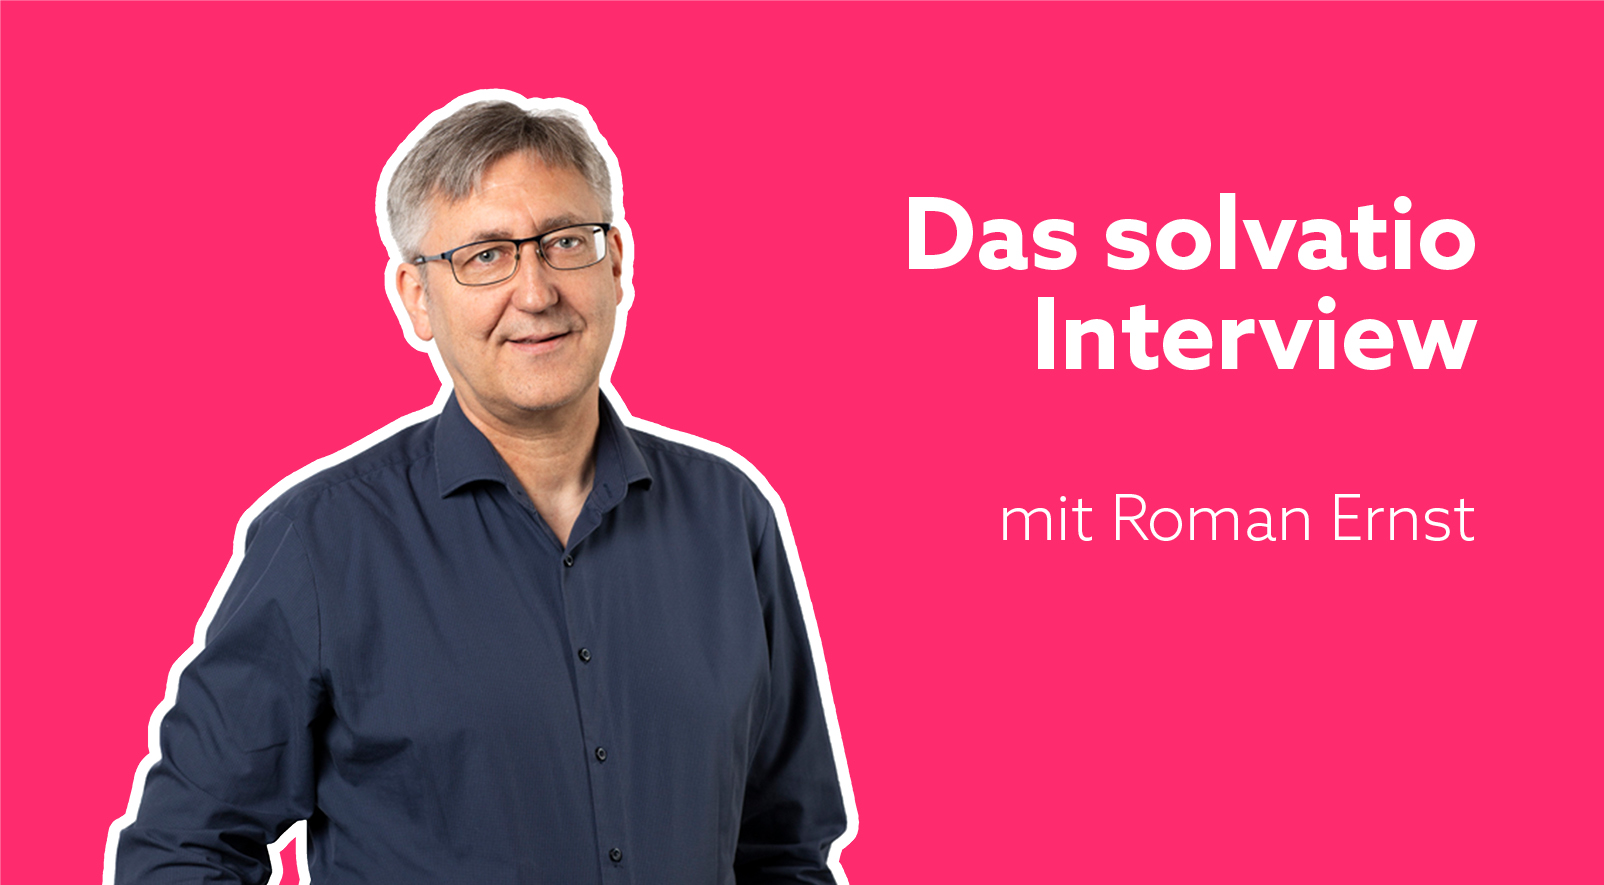 Roman Ernst im Interview: „Mit Geduld und Beharrlichkeit zum KI-Erfolg“